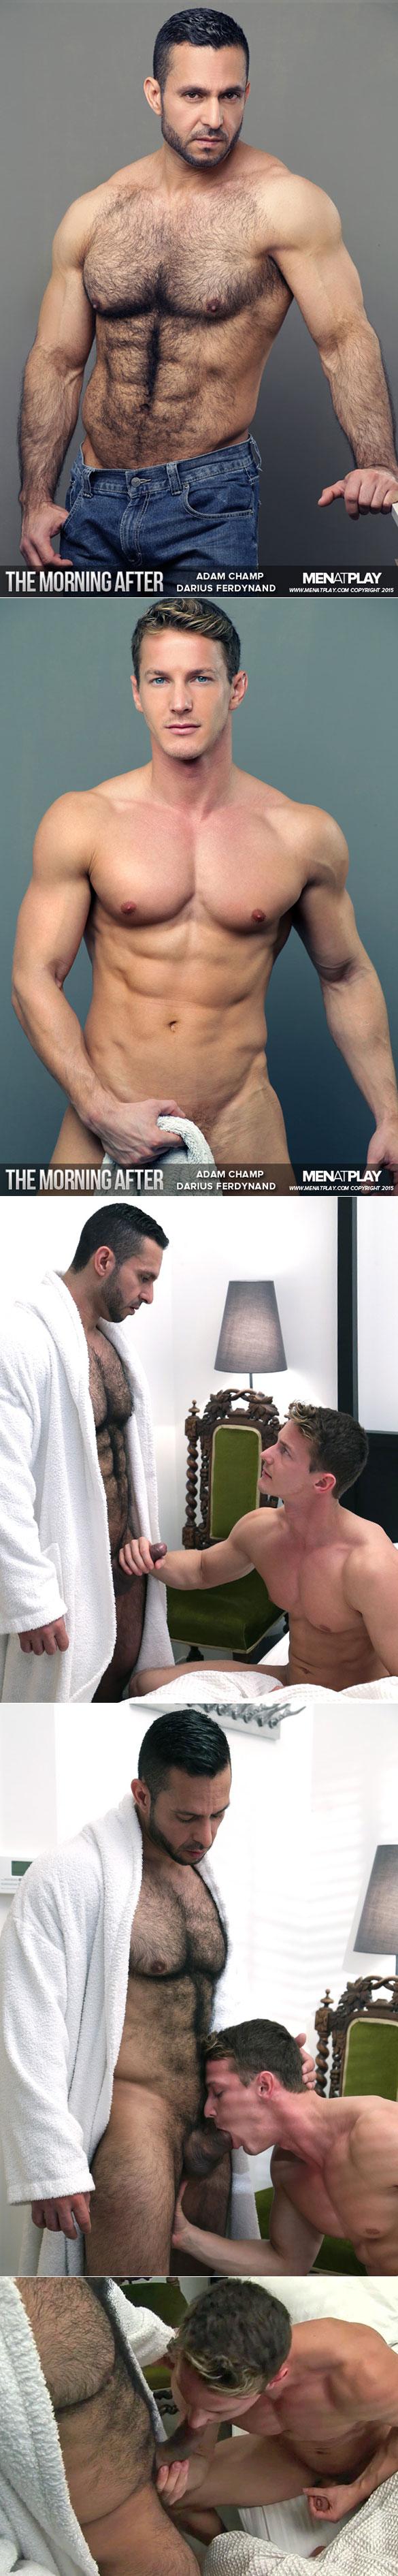 MenAtPlay: Adam Champ bangs Darius Ferdynand in "The Morning After"